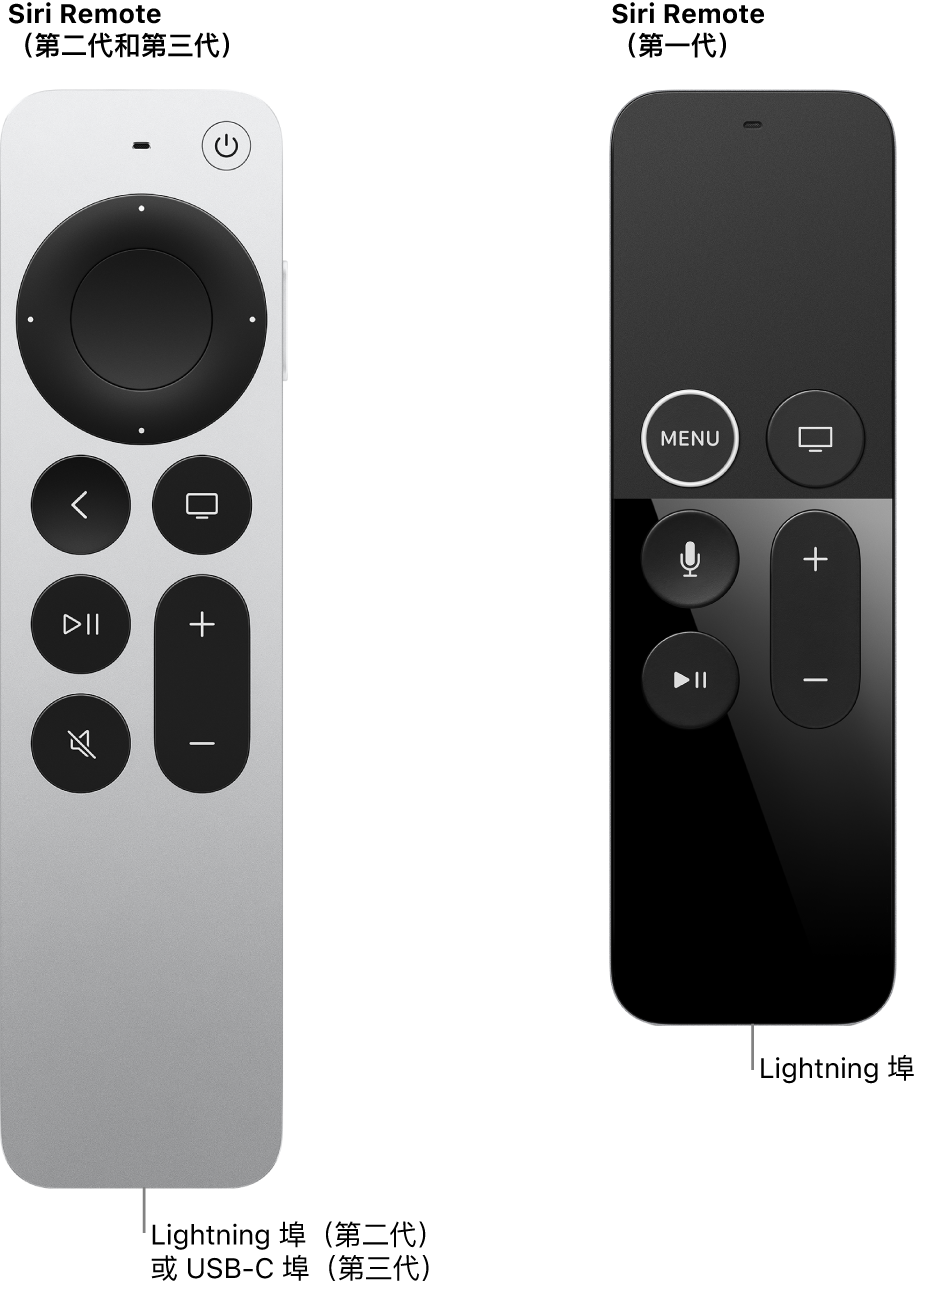 Siri Remote（第二代和第三代）和 Siri Remote（第一代）的影像，顯示連接埠